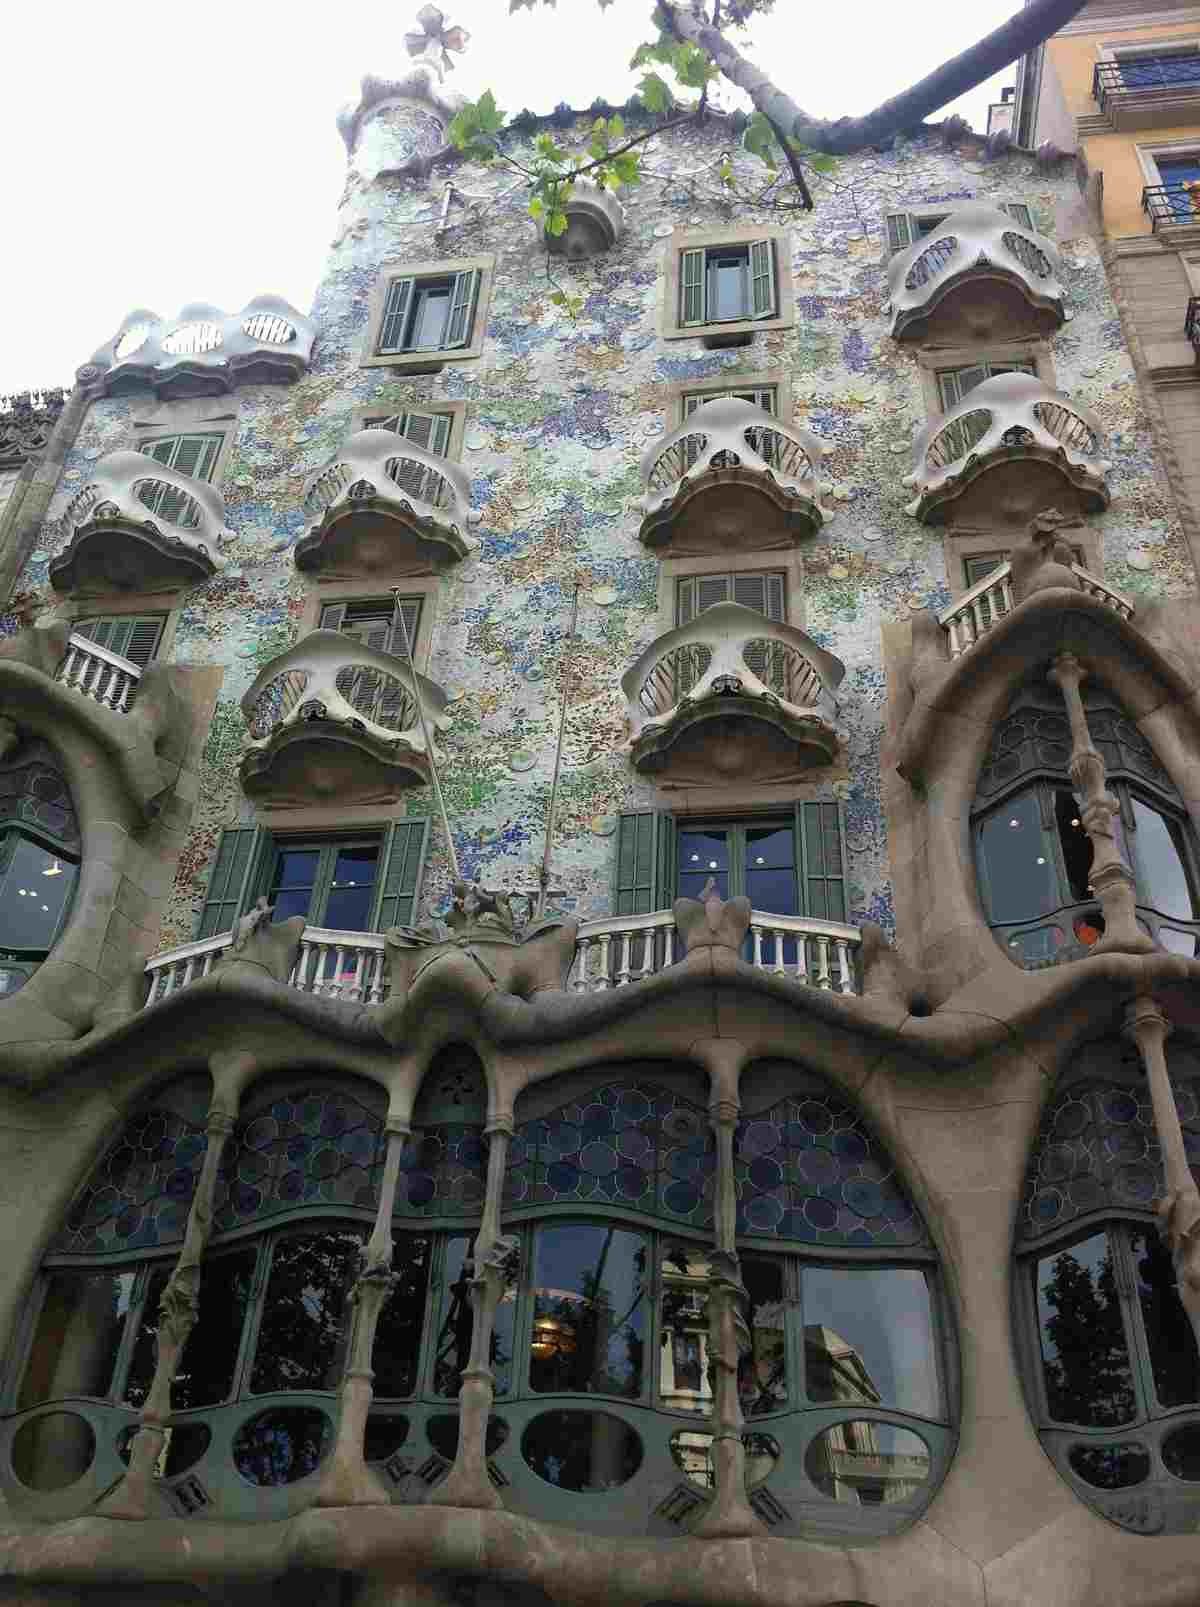   Magical Nächte Casa Batllo Fassade 